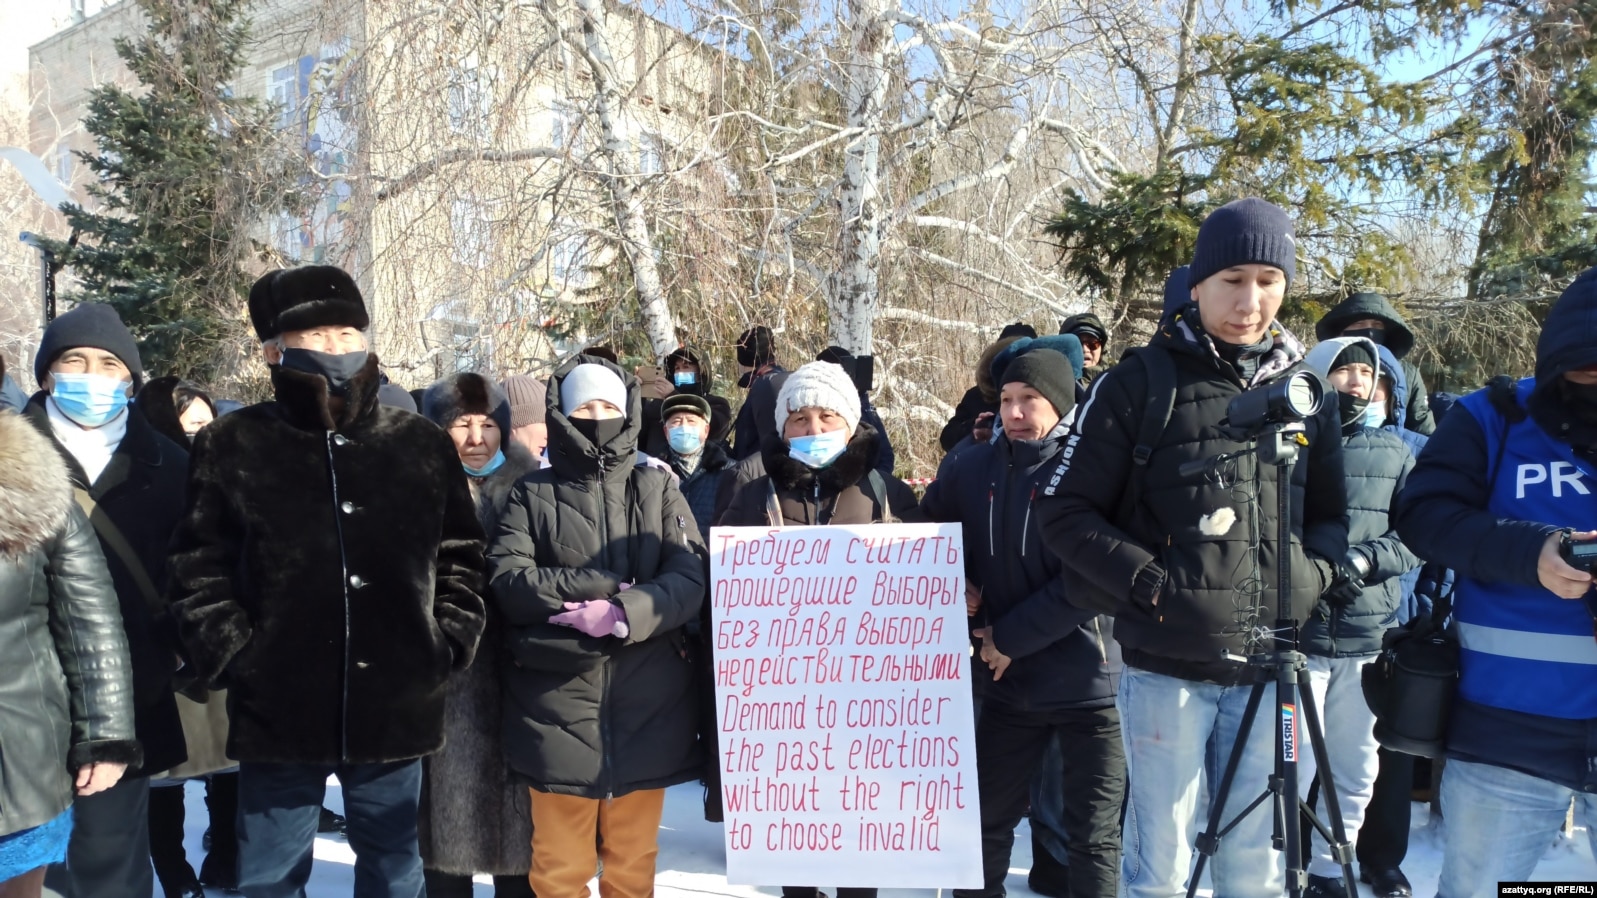 Согласованный митинг с требованием провести политические реформы и освободить политических заключенных. Уральск, 28 февраля 2021 года.